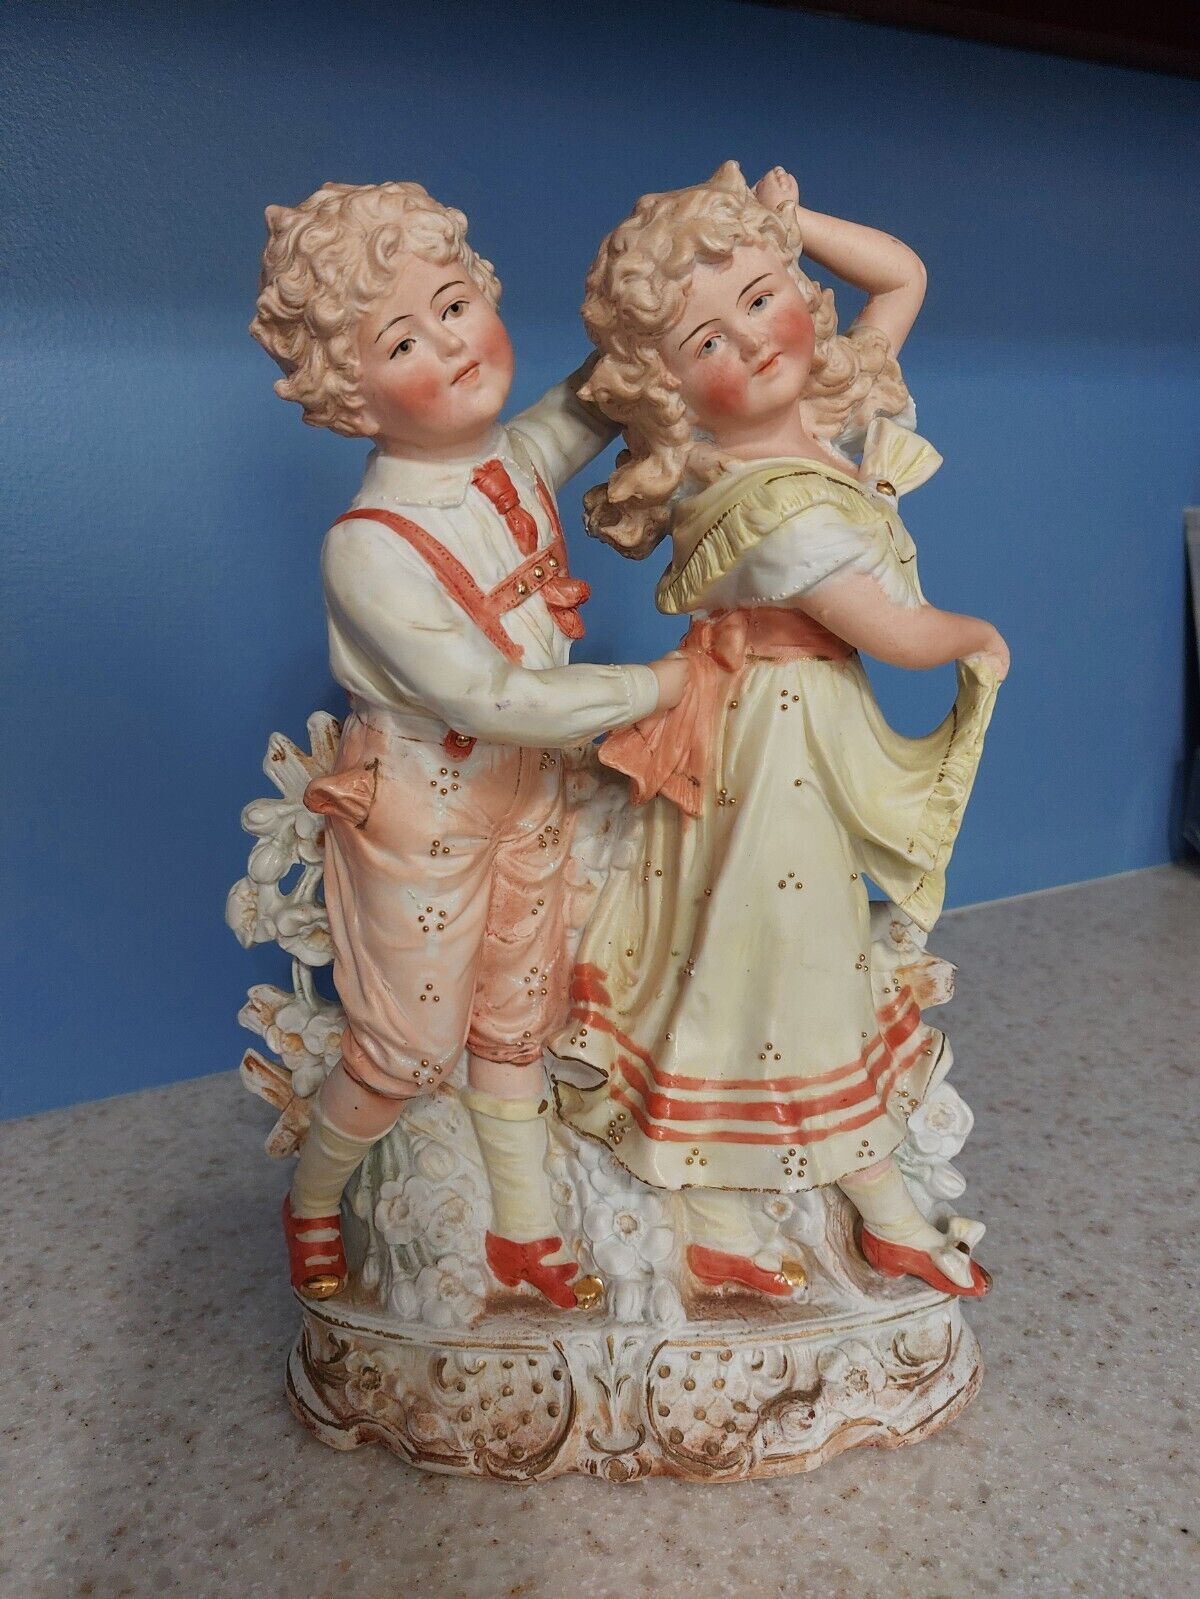 Antique German Carl Schneider Bisque Porcelain Figurine Boy and Girl 19th cent.